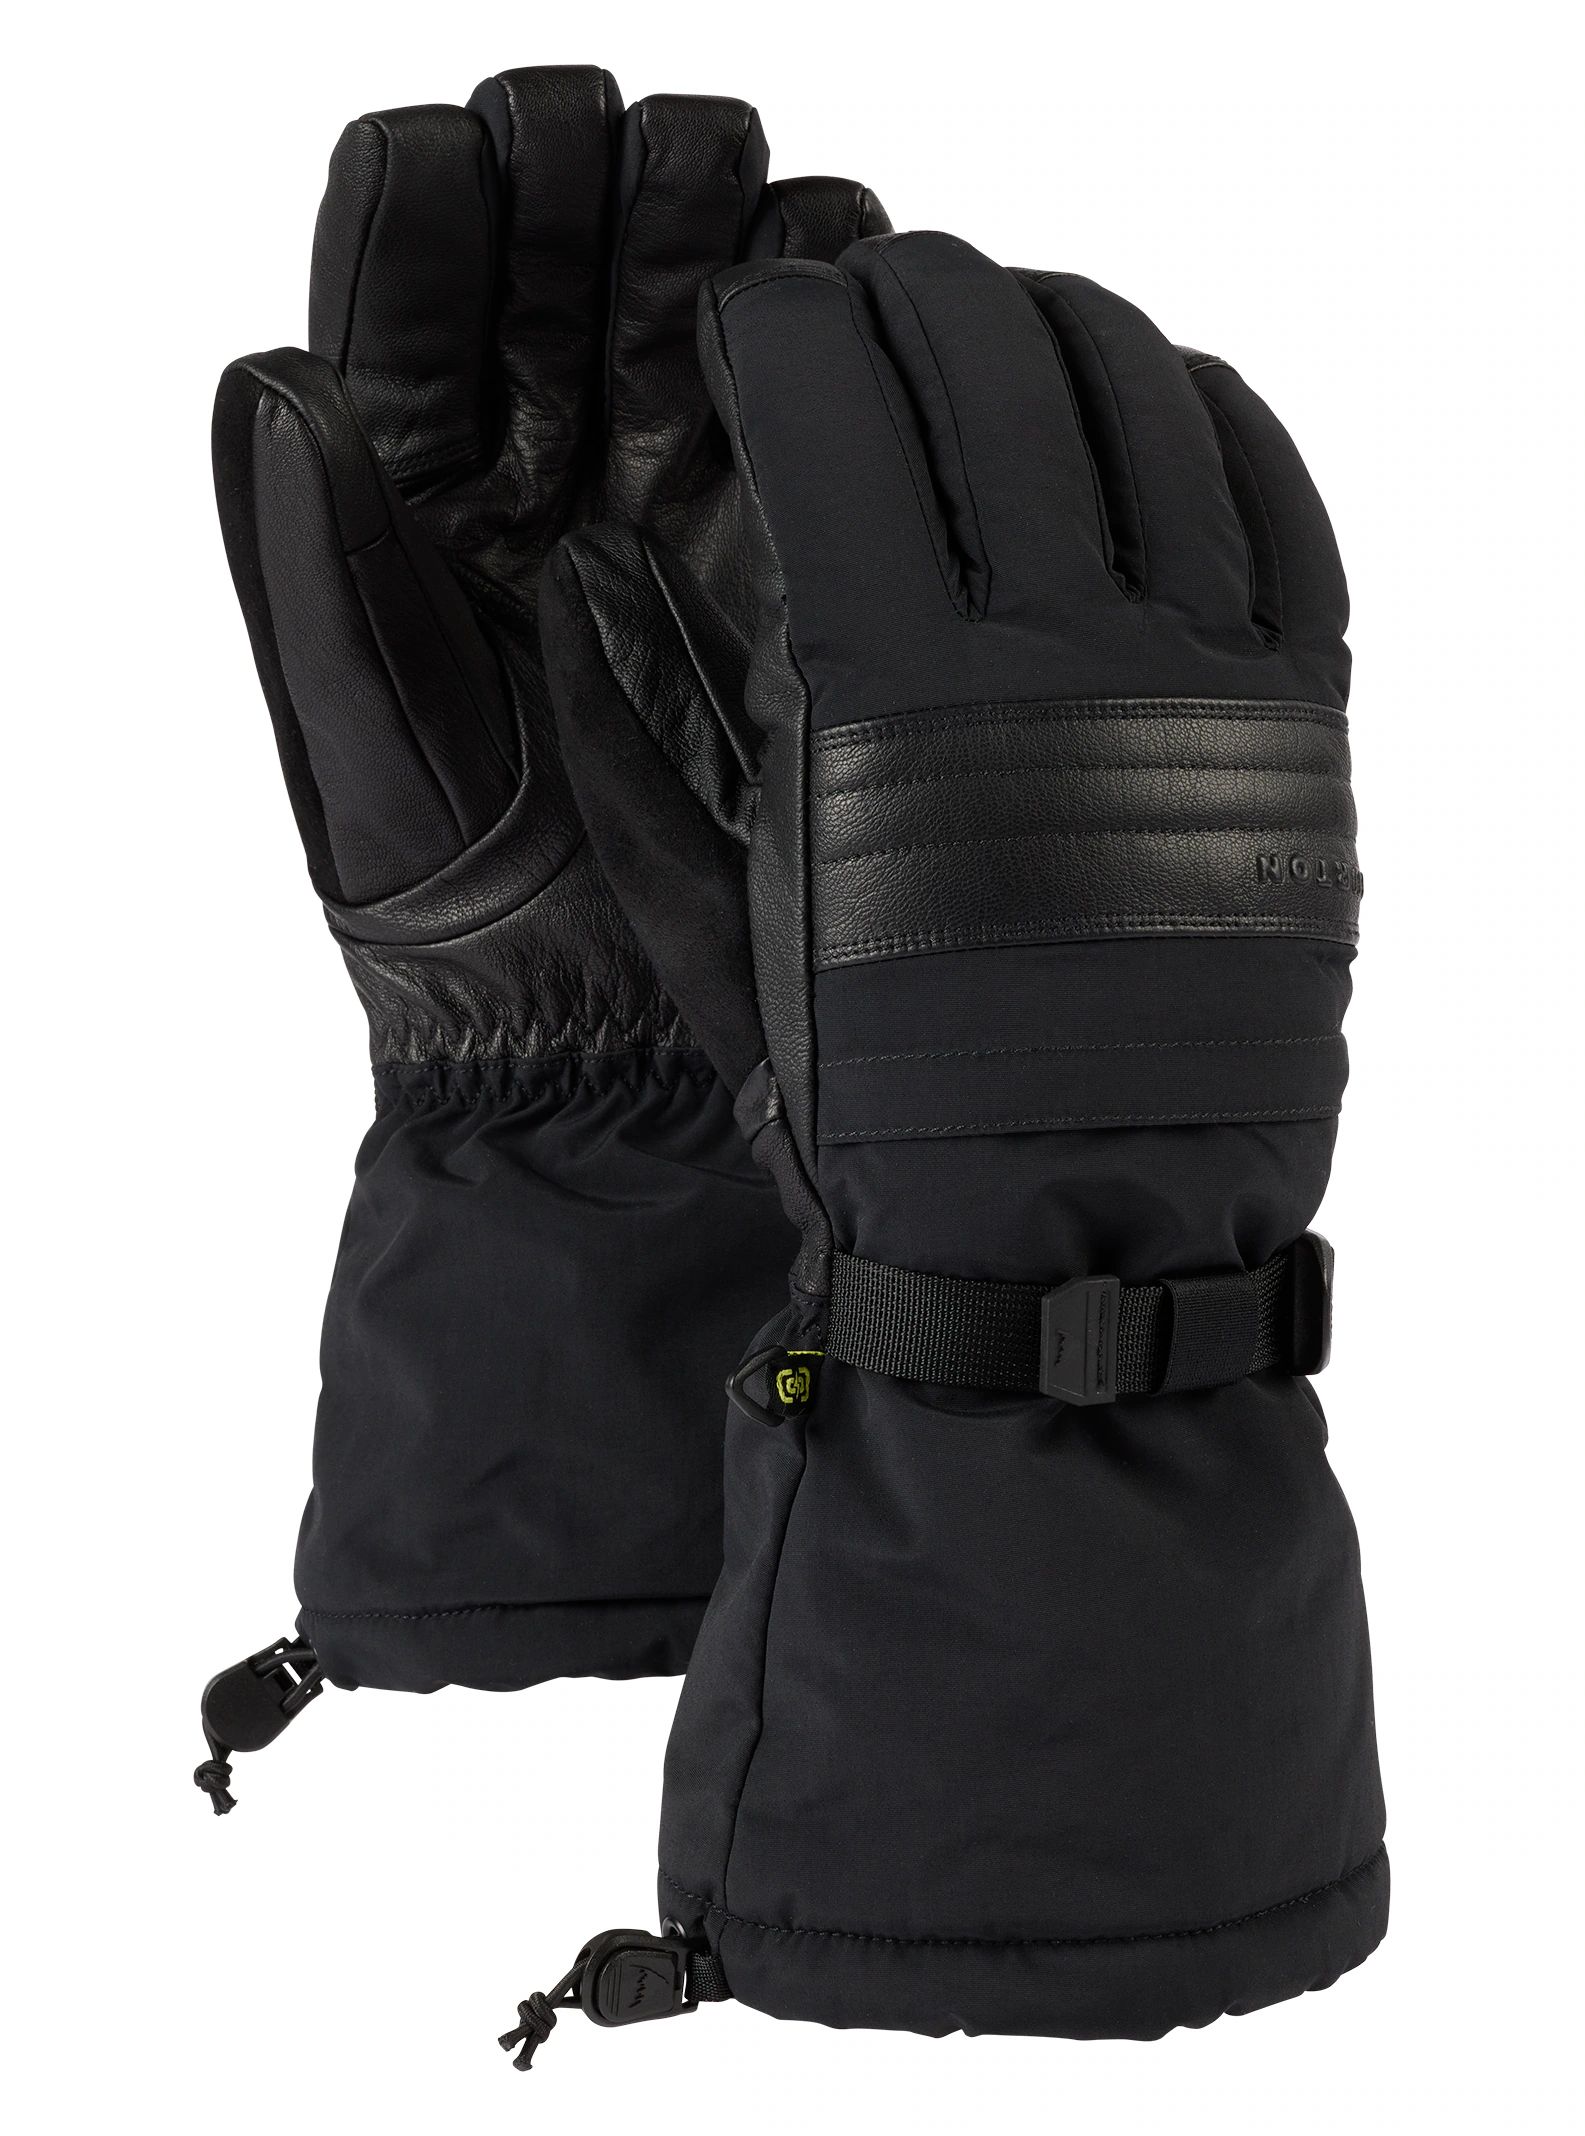 Men's Burton GORE-TEX Gloves | Burton Snowboards US